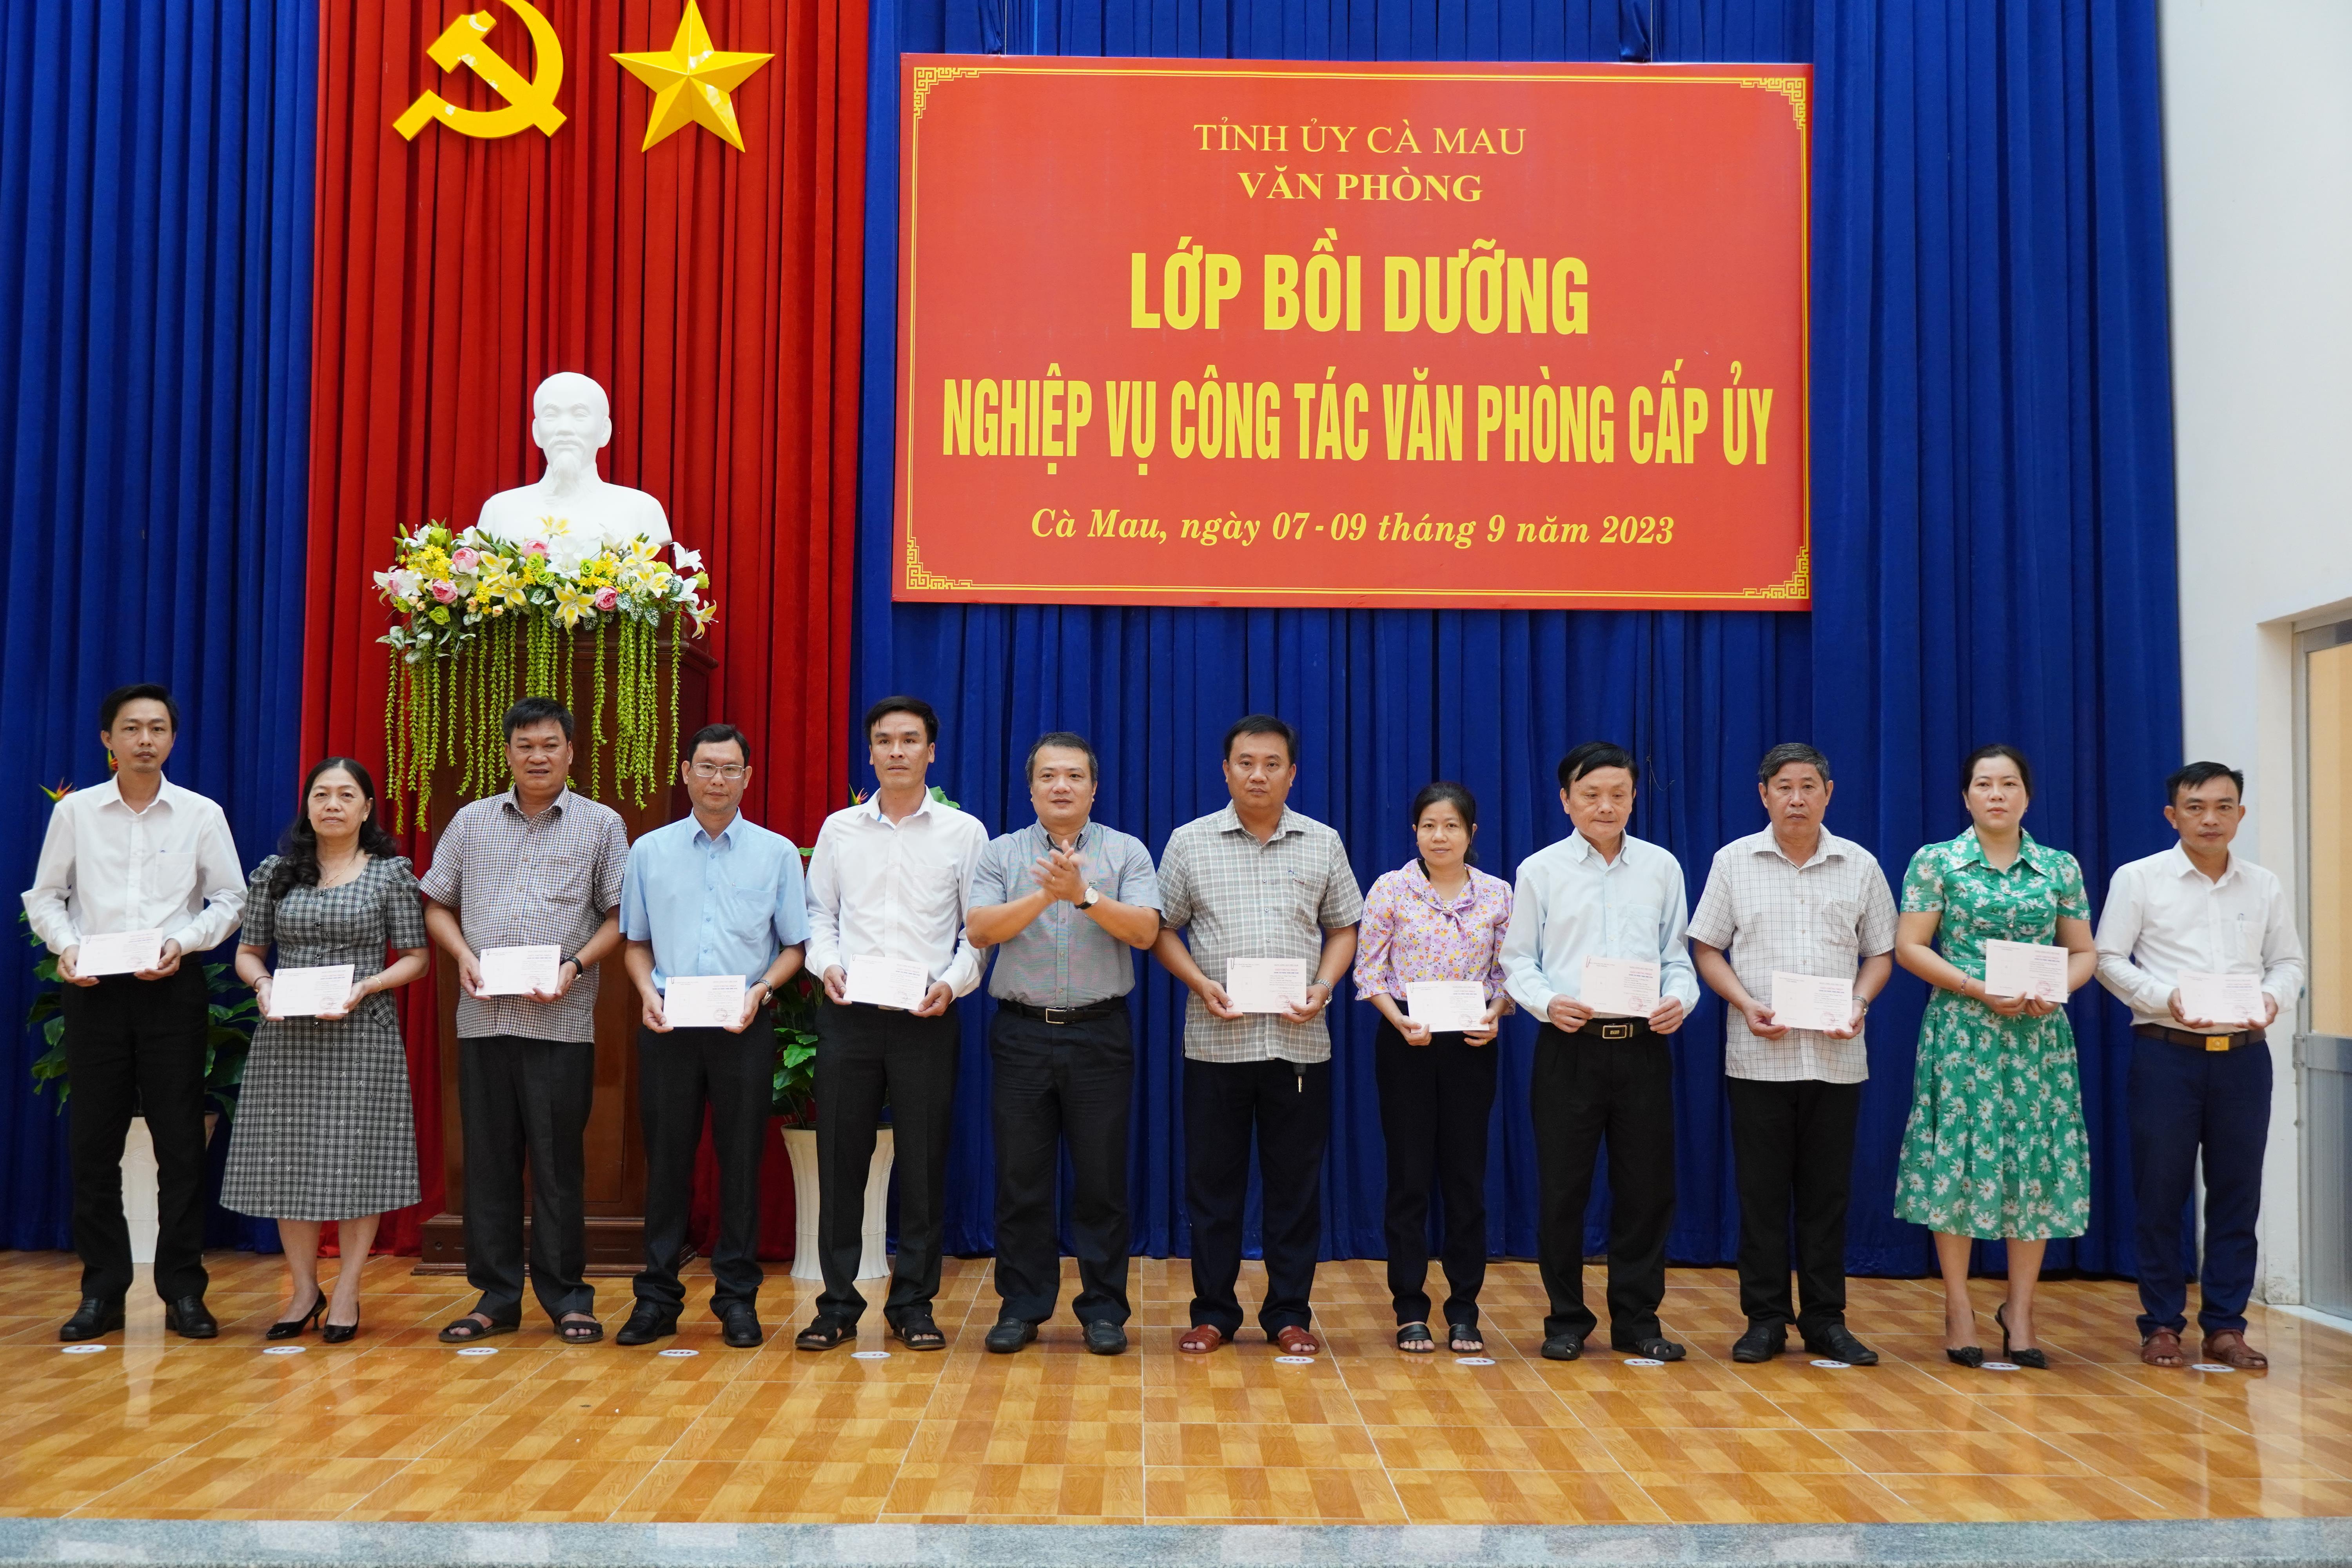 Đồng chí Lê Tuấn Hải - Chánh Văn phòng Tỉnh ủy trao Giấy chứng nhận đã hoàn thành chương trình bồi dưỡng nghiệp vụ văn phòng cấp ủy cho các học viên.